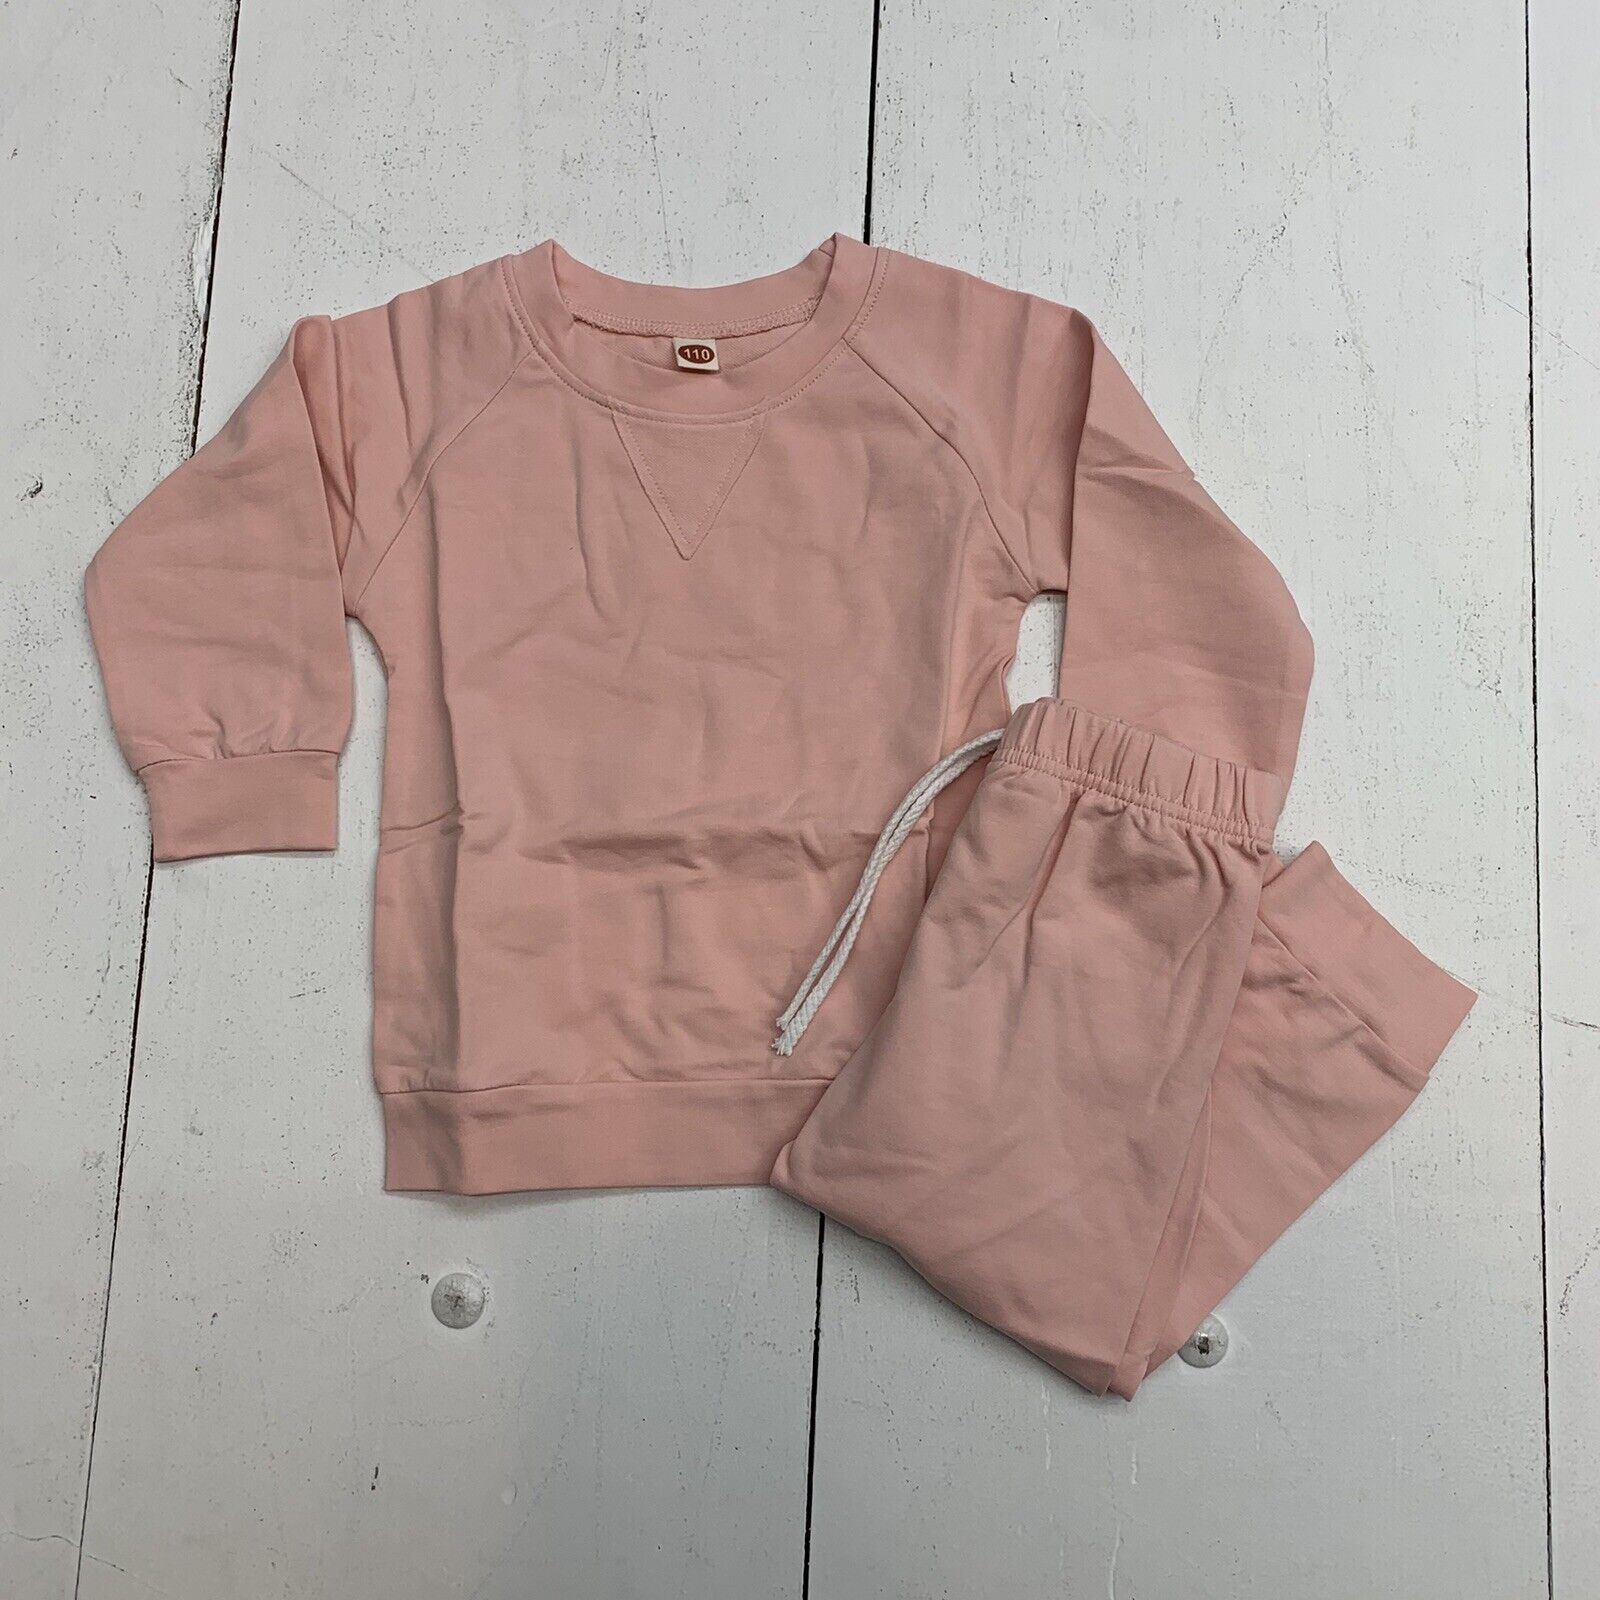 Buy Buy Baby Pink Plastic Children's Clothes Hangers Bundle of 3